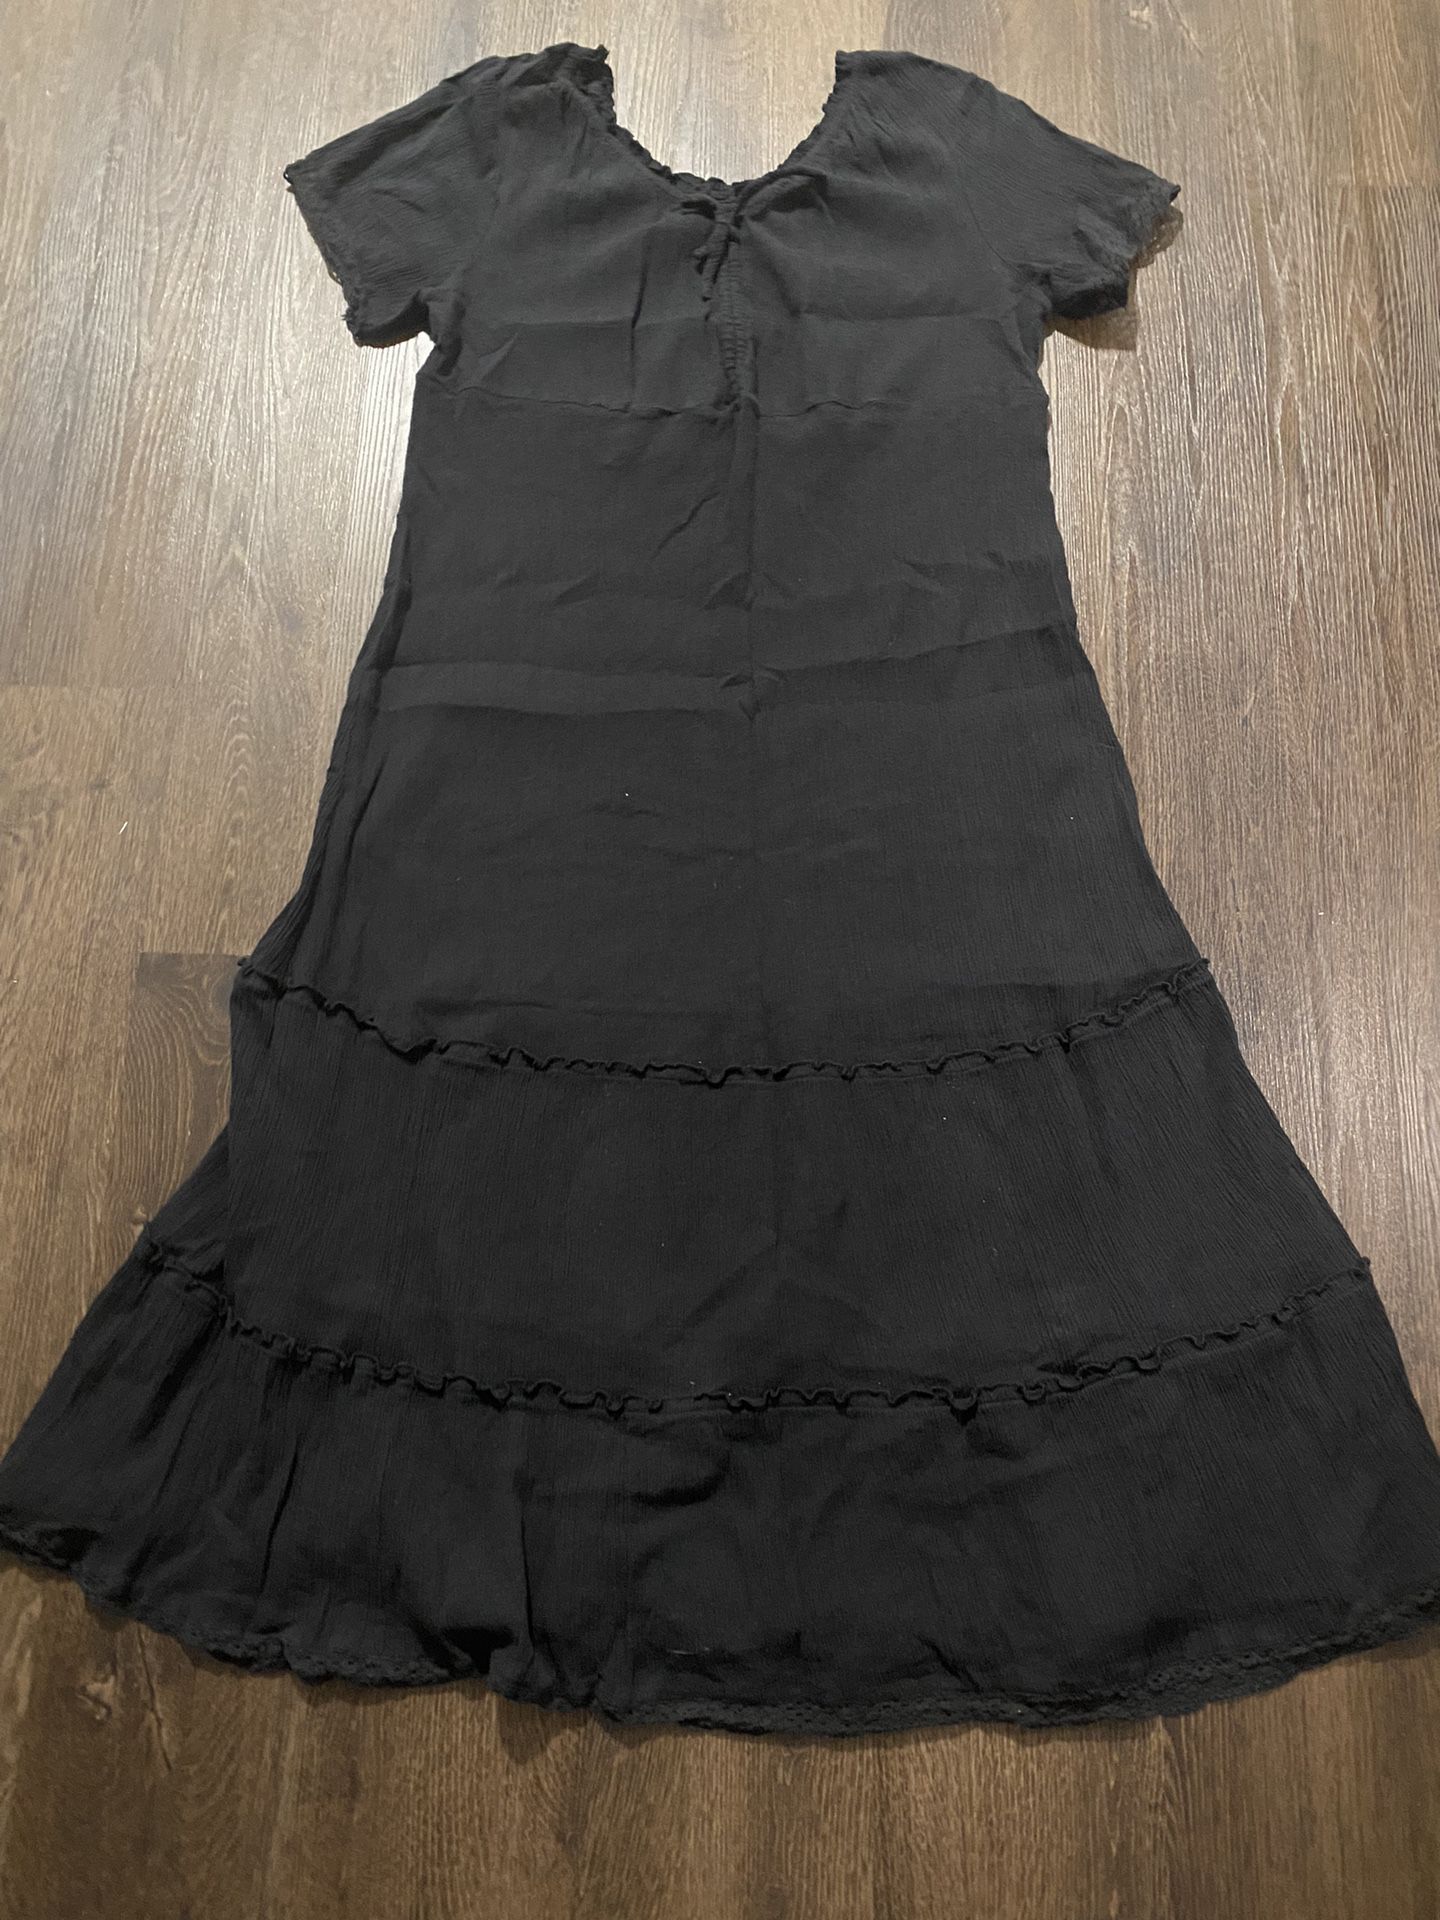 Womans Black Dress Size 1x By Ellos #19